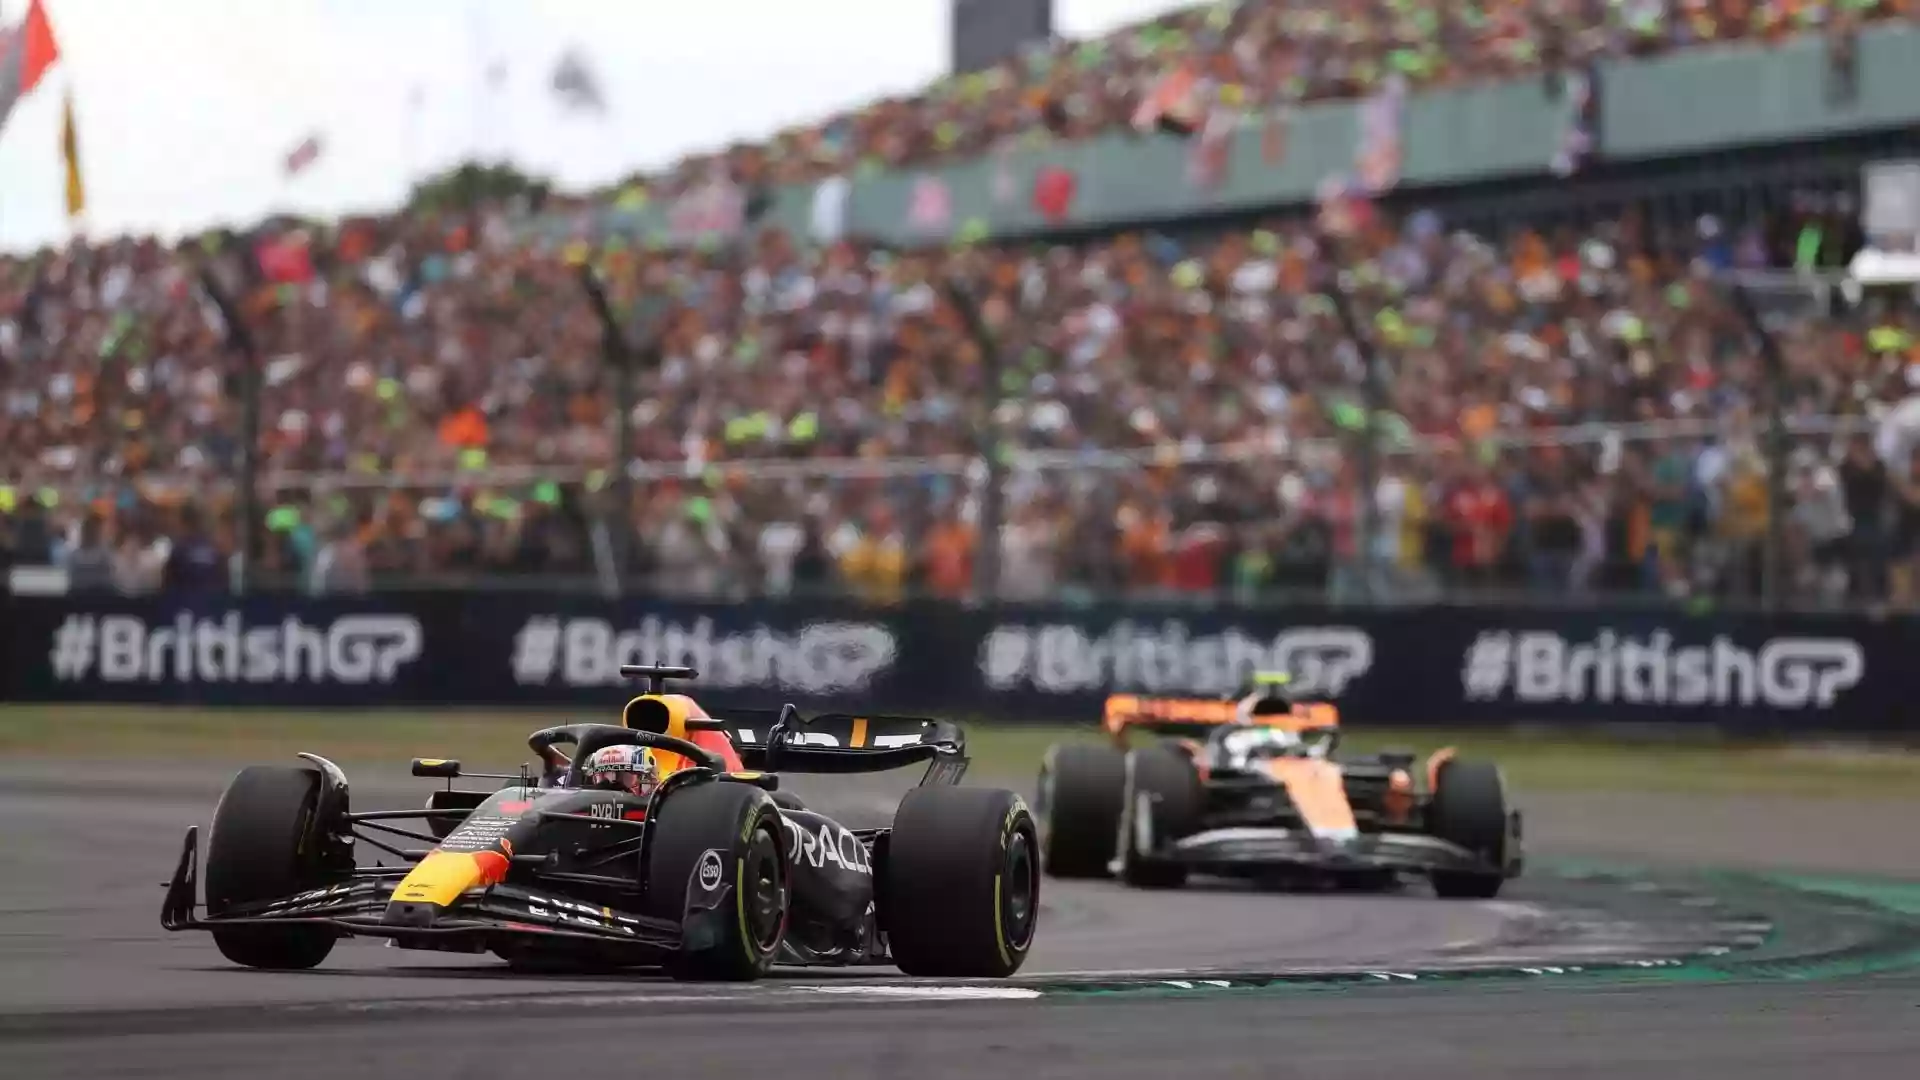 «Ландо Норрис догнал бы Макса Ферстаппена, если бы британский Гран-при продлилия еще 5 кругов», — утверждает старший советник Red Bull